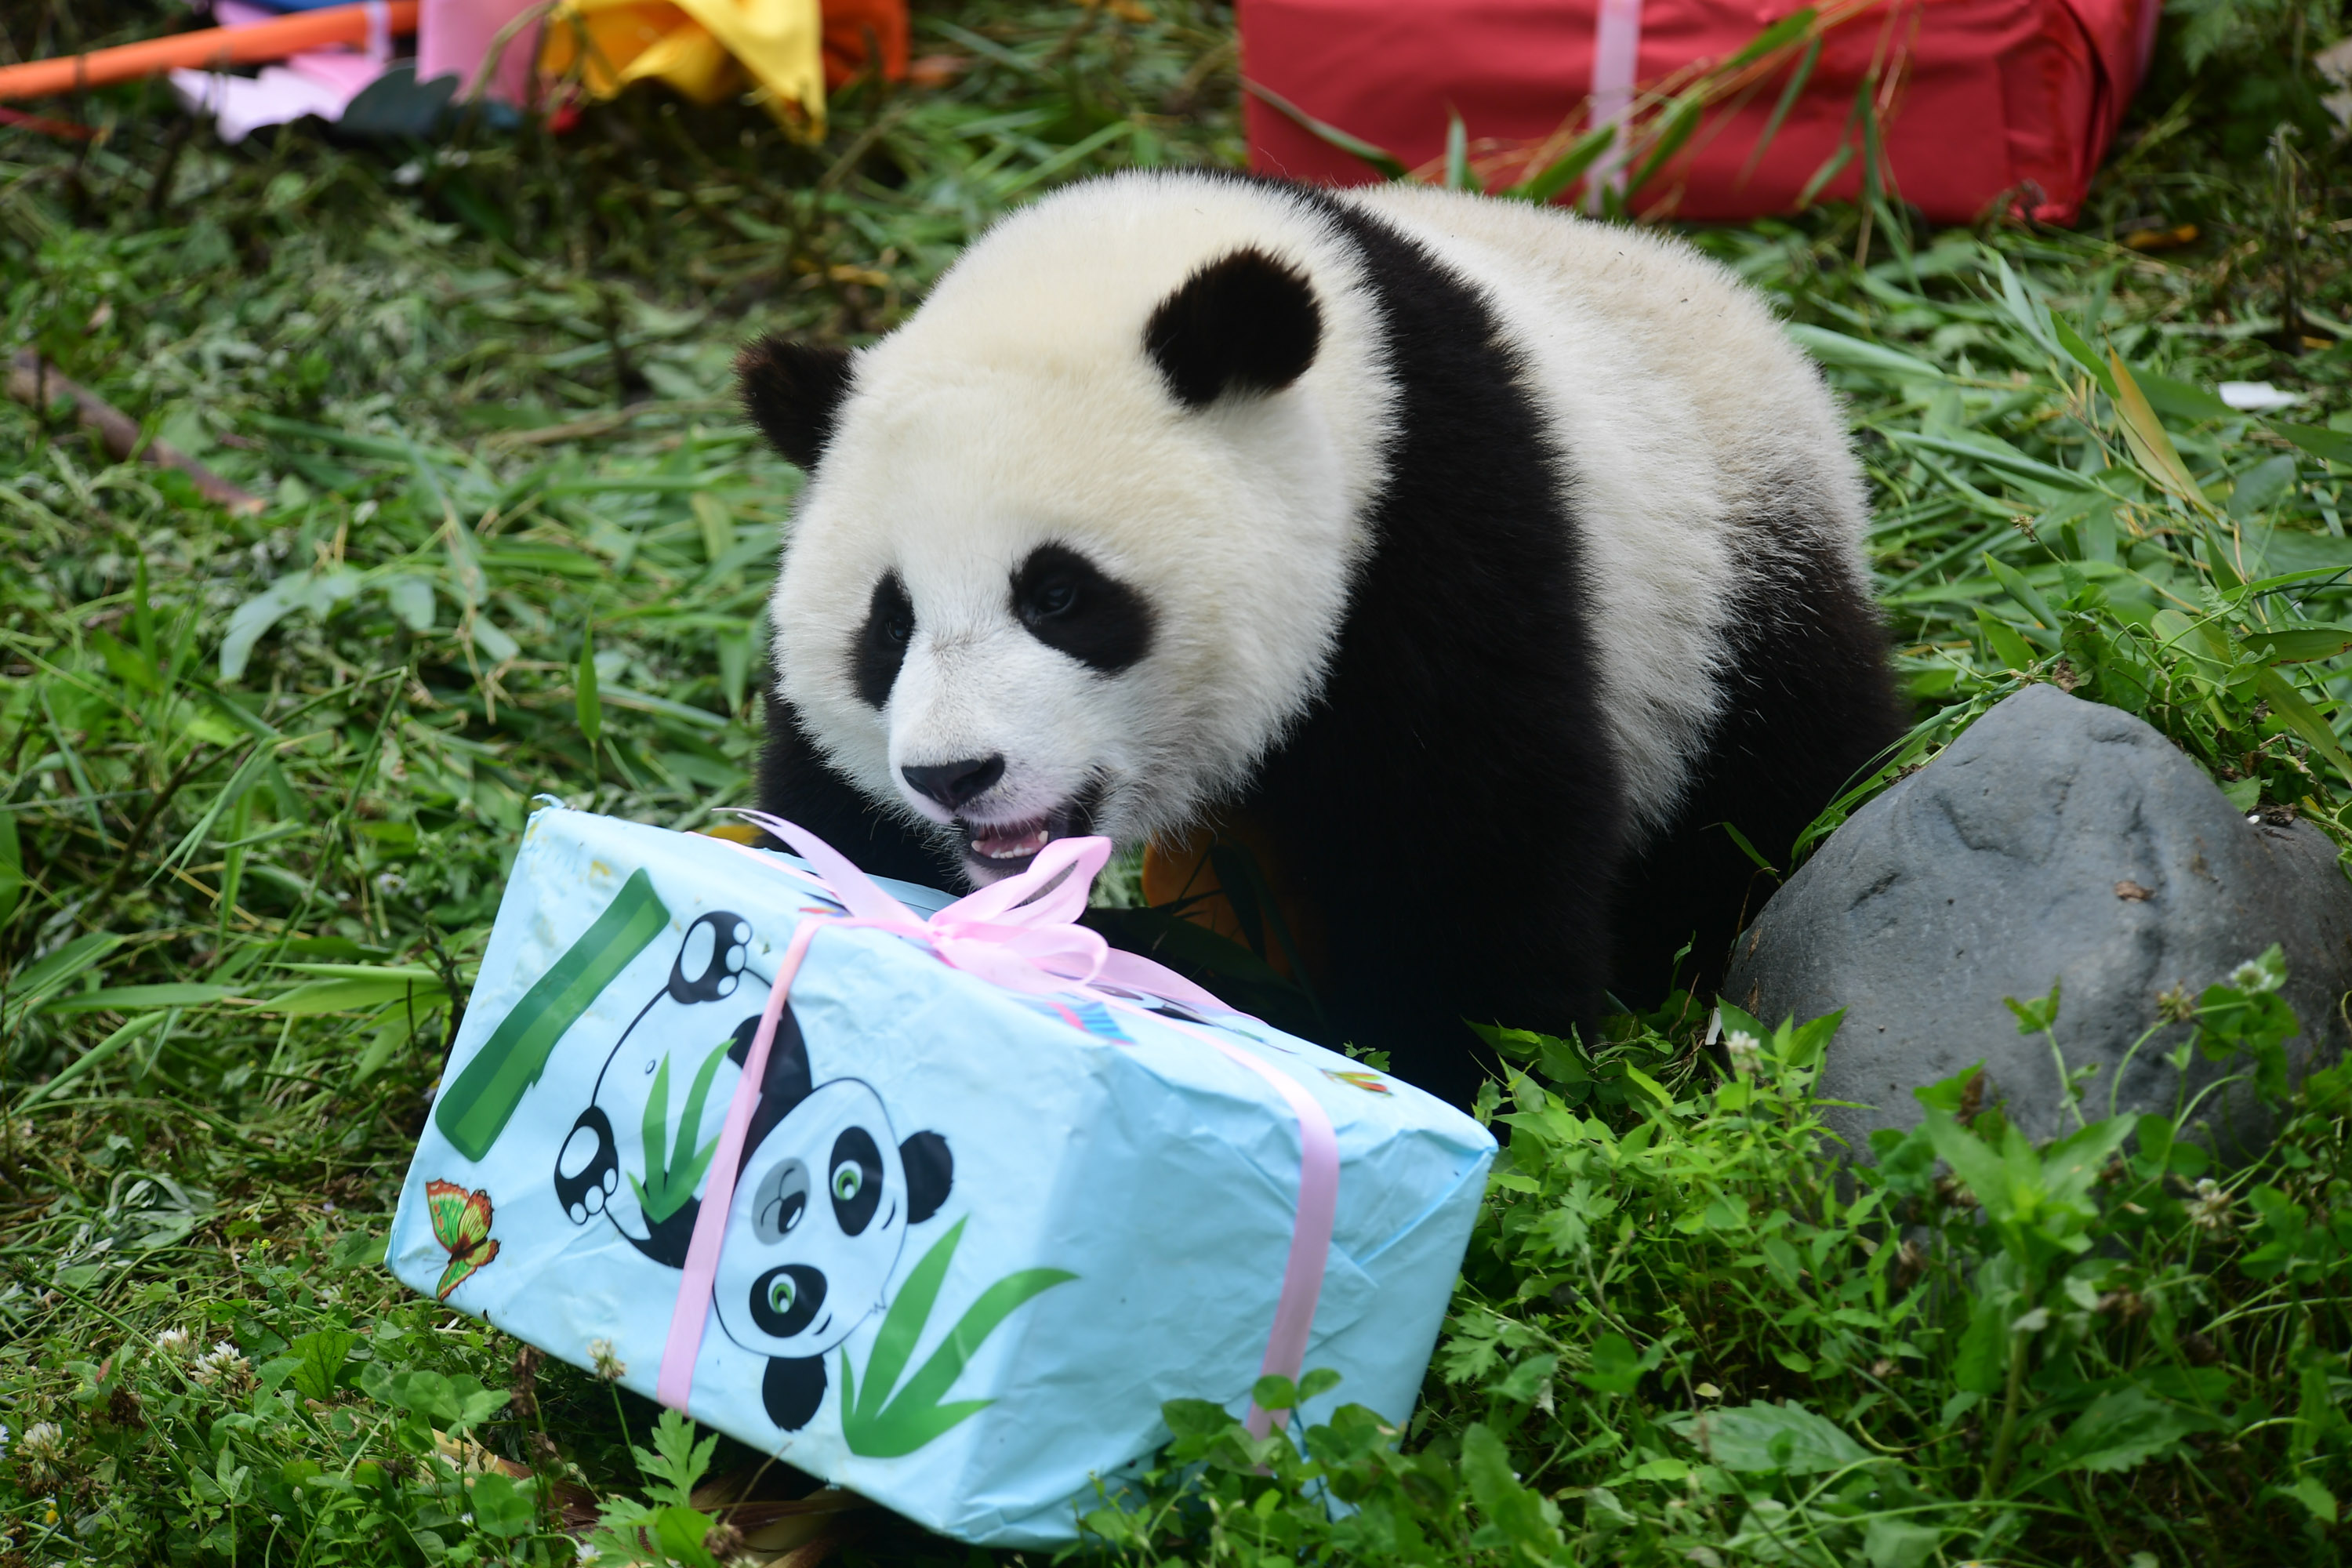 四川卧龙:2018年出生的大熊猫幼仔集体过生日